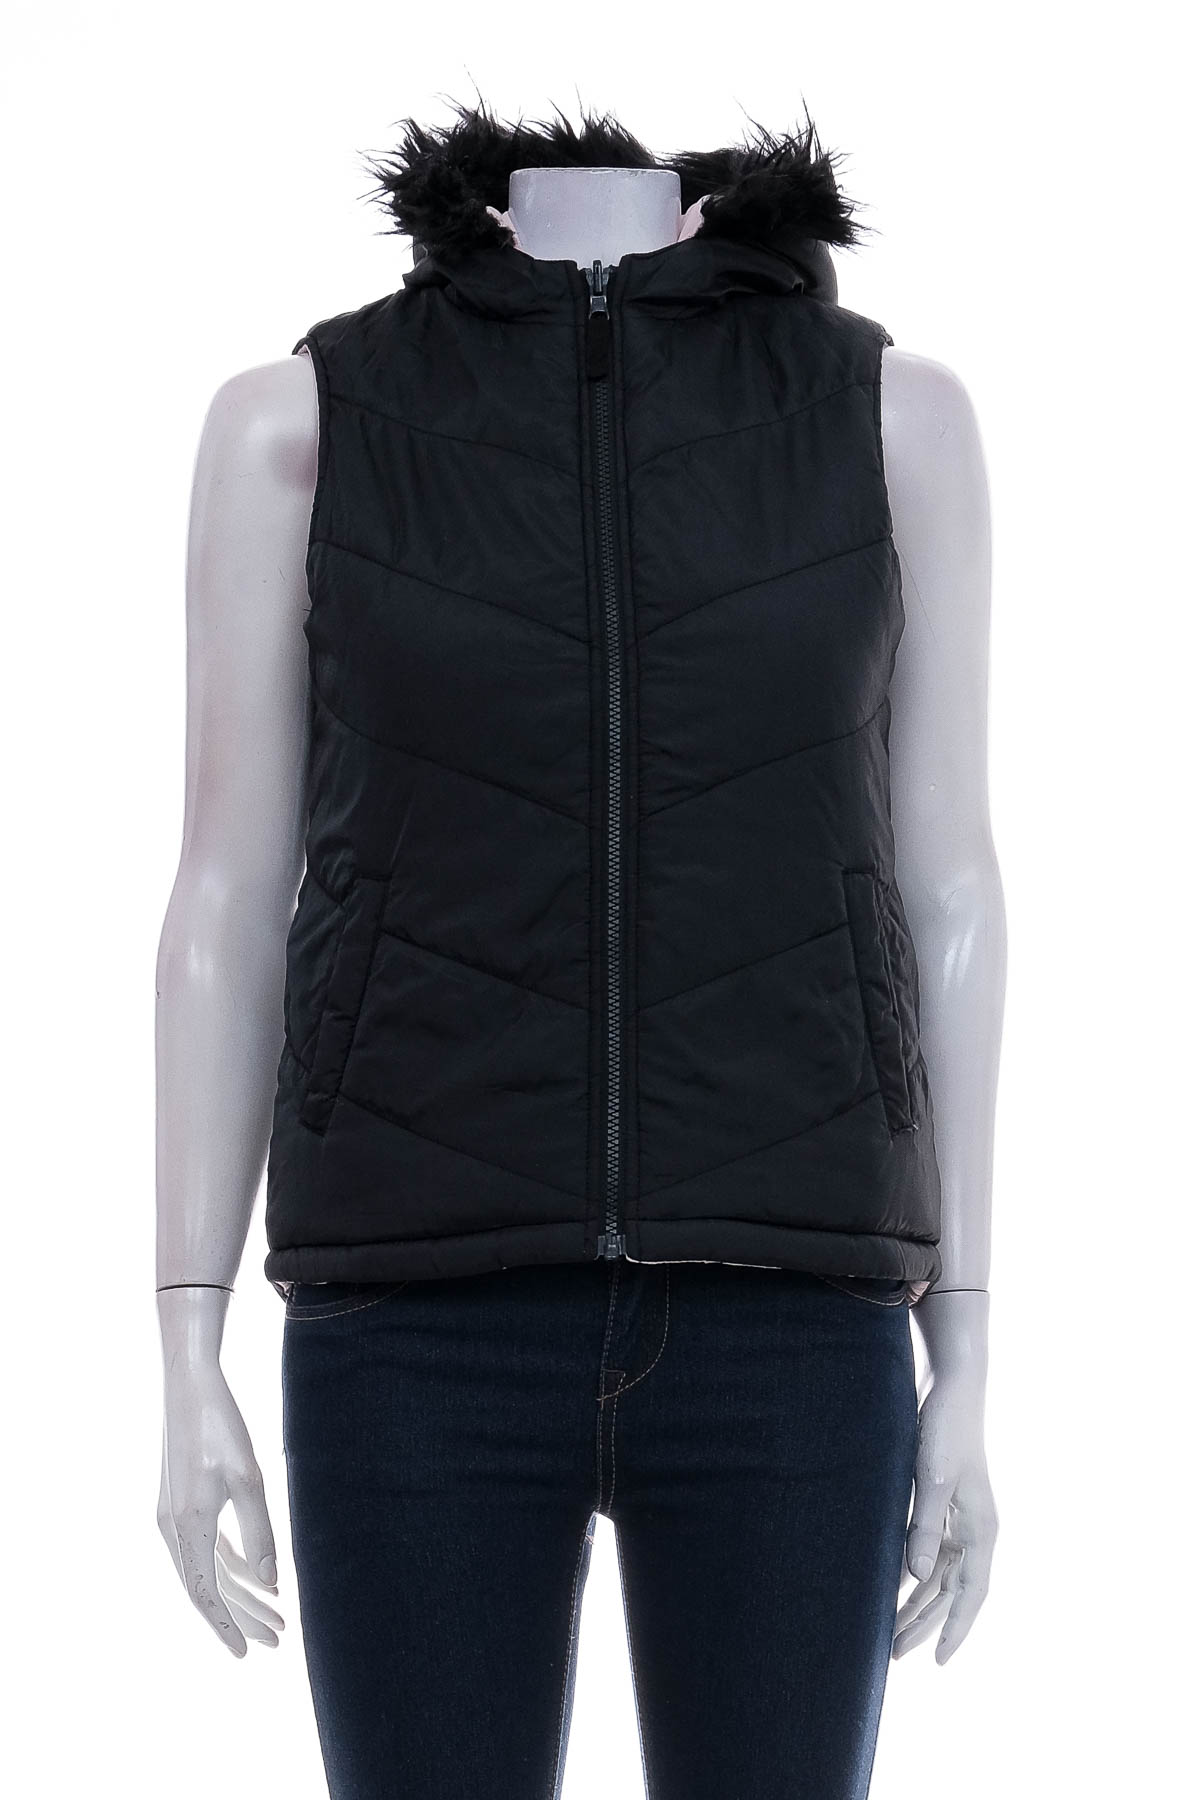 Vest for girl reversible - Target - 0